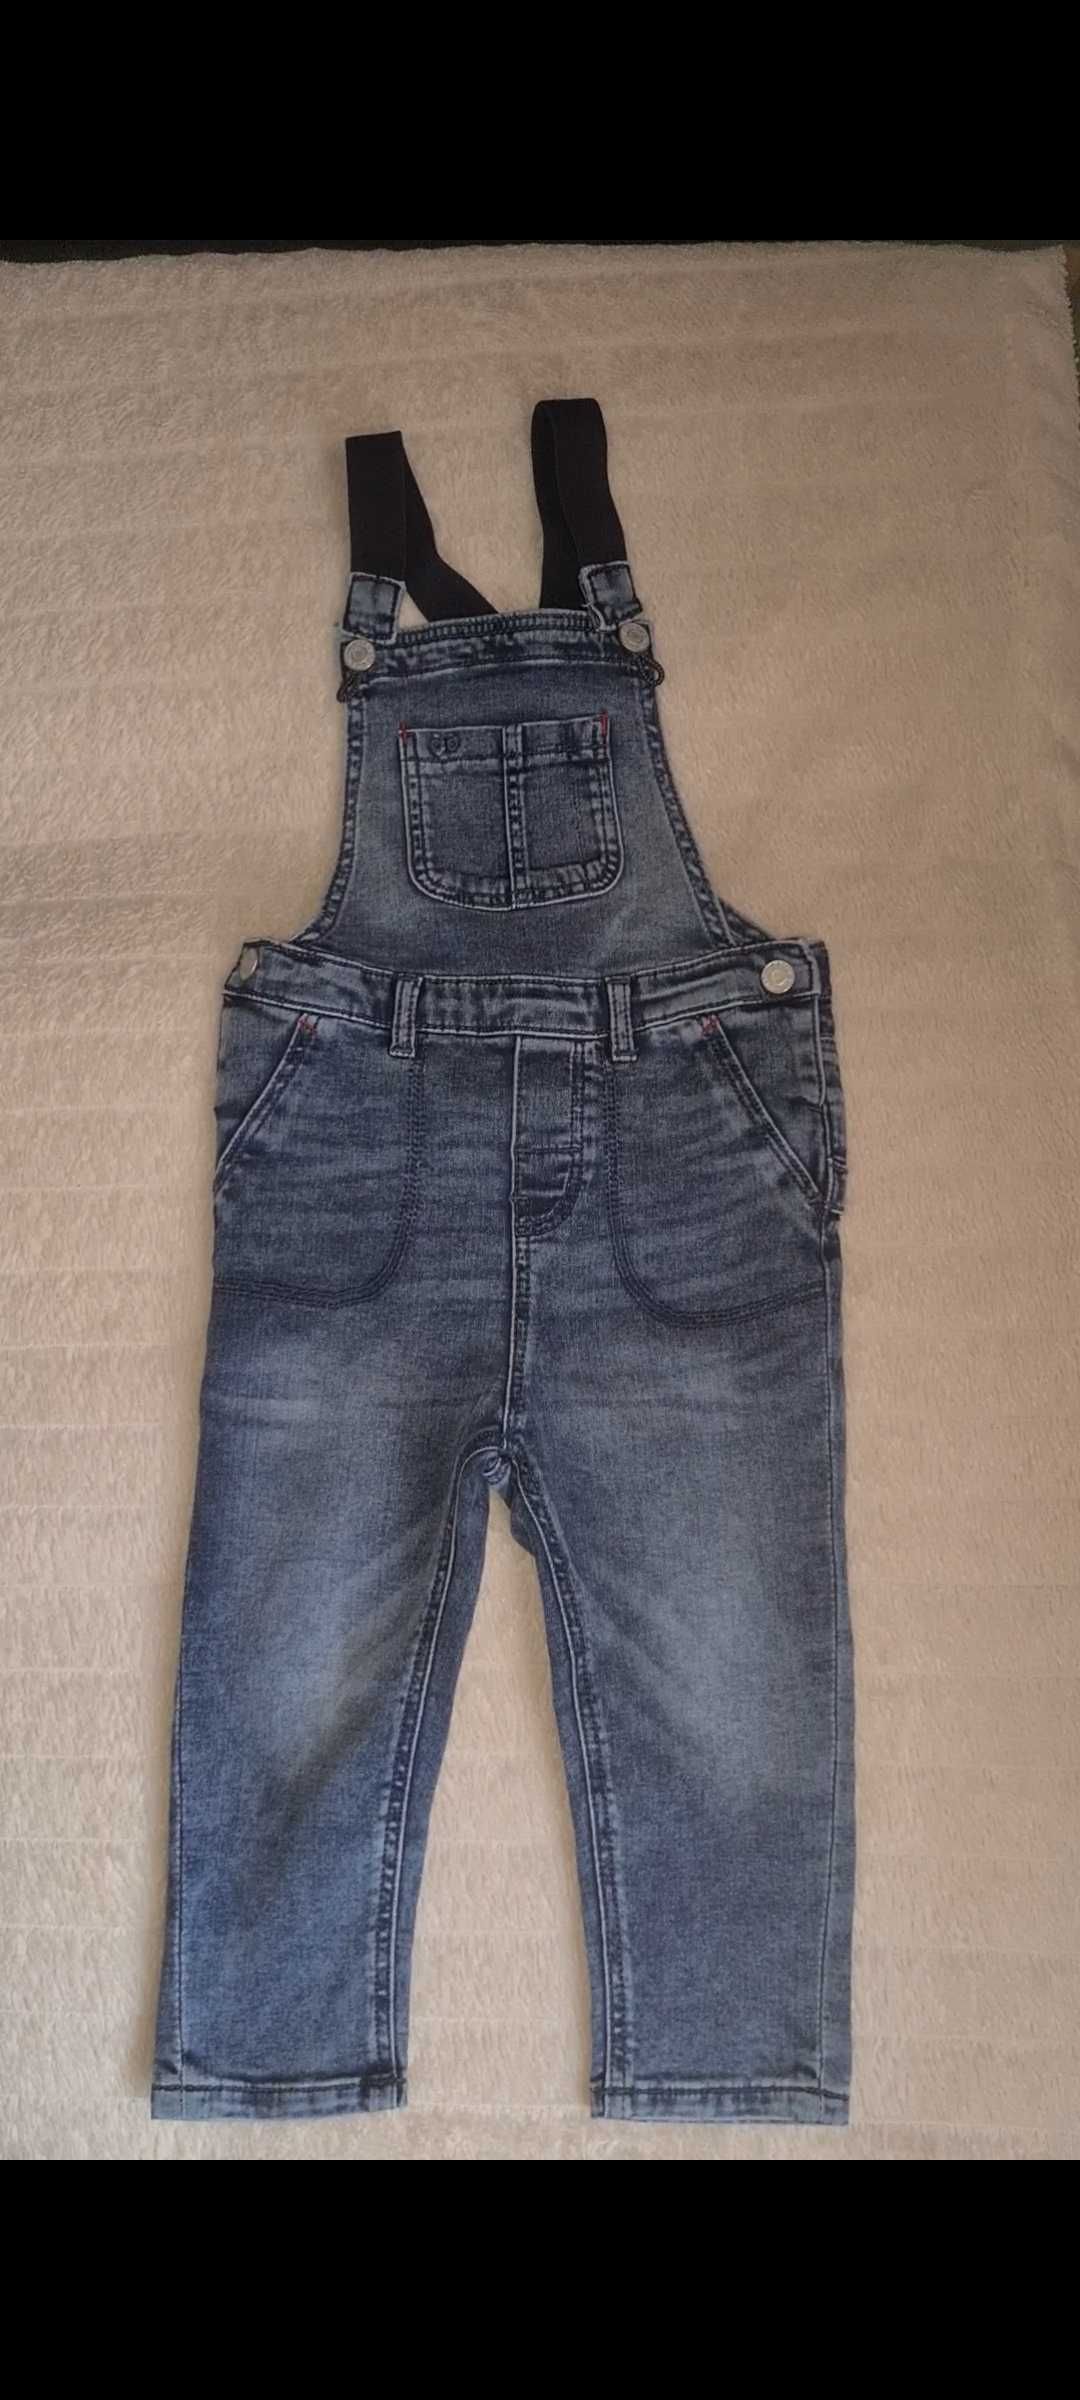 Salopeta jeans albastra fata H&M grosuta cu buzunare spate 1/2 ani nou